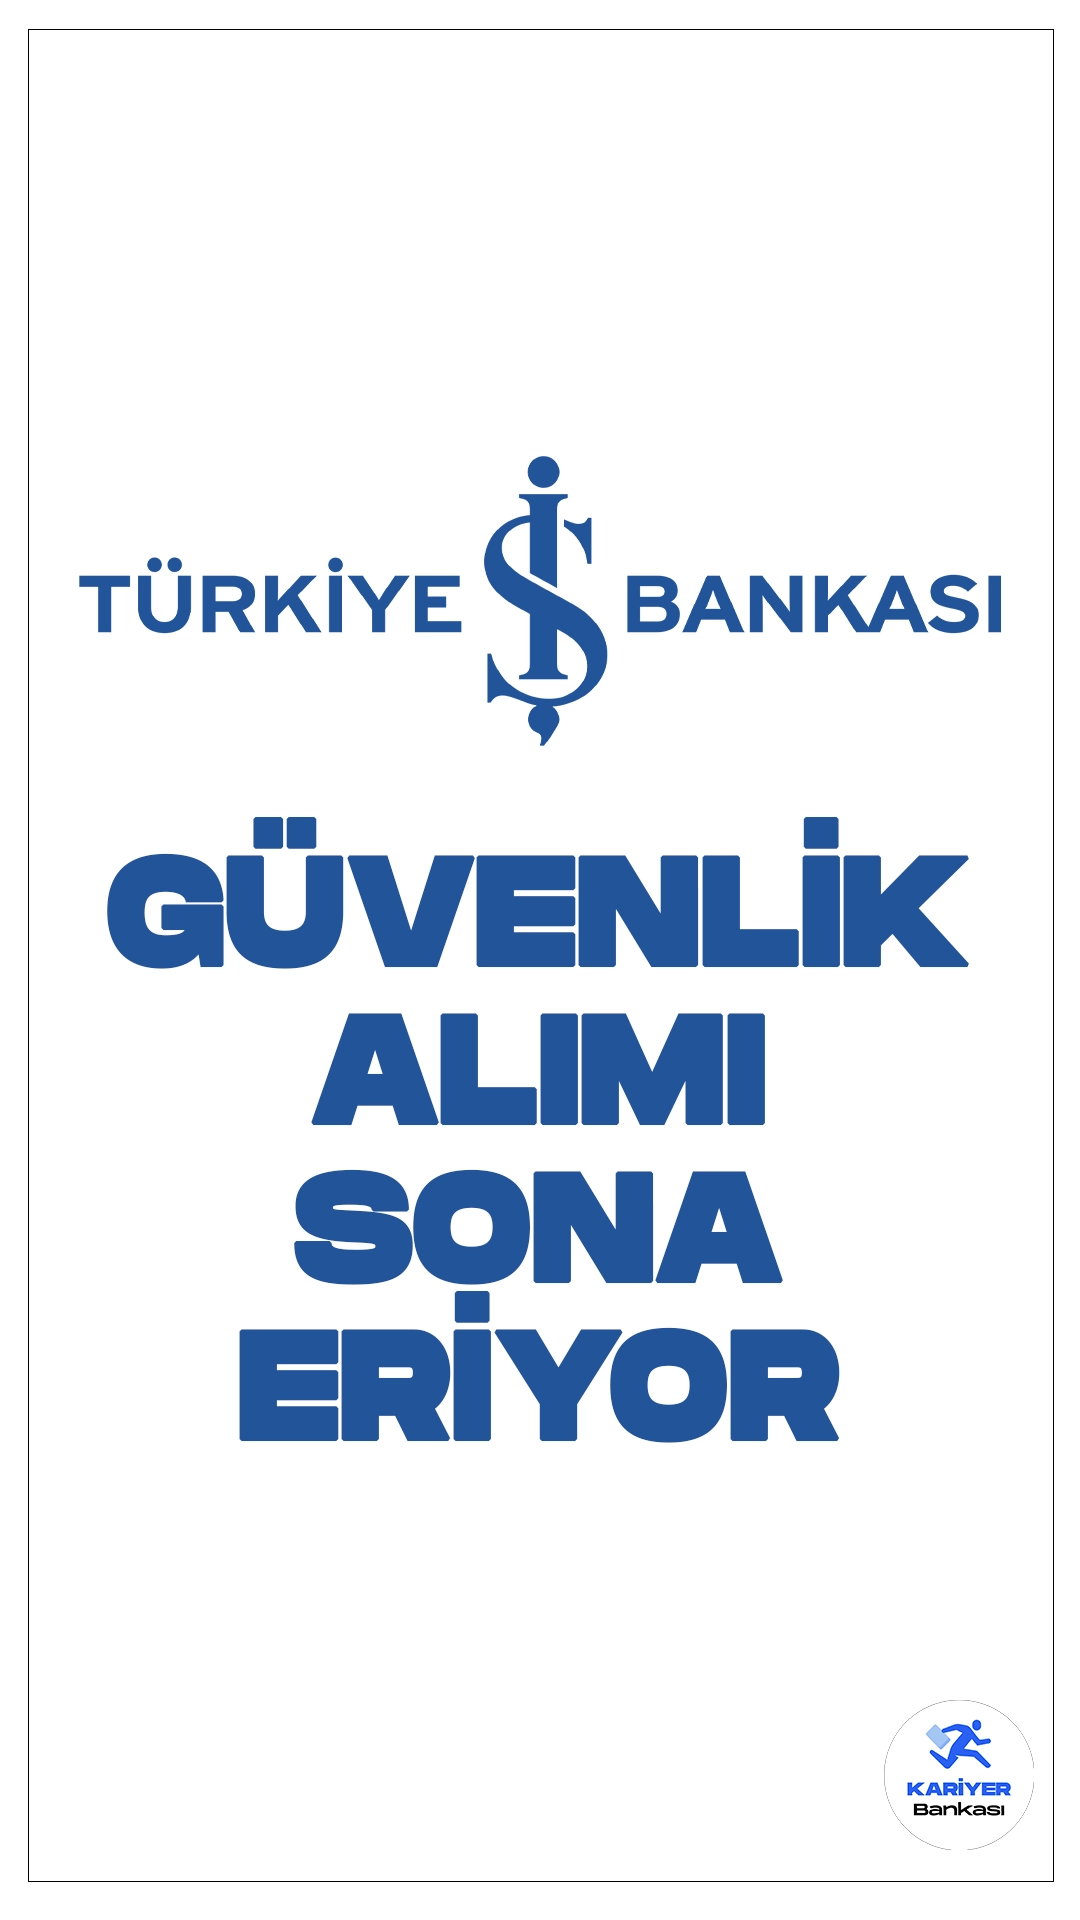 İş Bankası Güvenlik Alımı Sona Eriyor.Türkiye İş Bankası sayfasından yayımlanan duyuruda, İş Bankası Genel Müdürlüğünde çalıştırılmak üzere silahlı güvenlik görevlisi alımı yapılacağı aktarılmış, başvurular duyurunun yayımlanmasıyla birliktike başlamıştı. İşlemler bugün(22 Nisan) sona eriyor. Başvurular İş Bankası sayfasından online olarak gerçekleştirilecek. Başvuru yapacak adayların belirtilen şartları taşıması gerekmektedir.